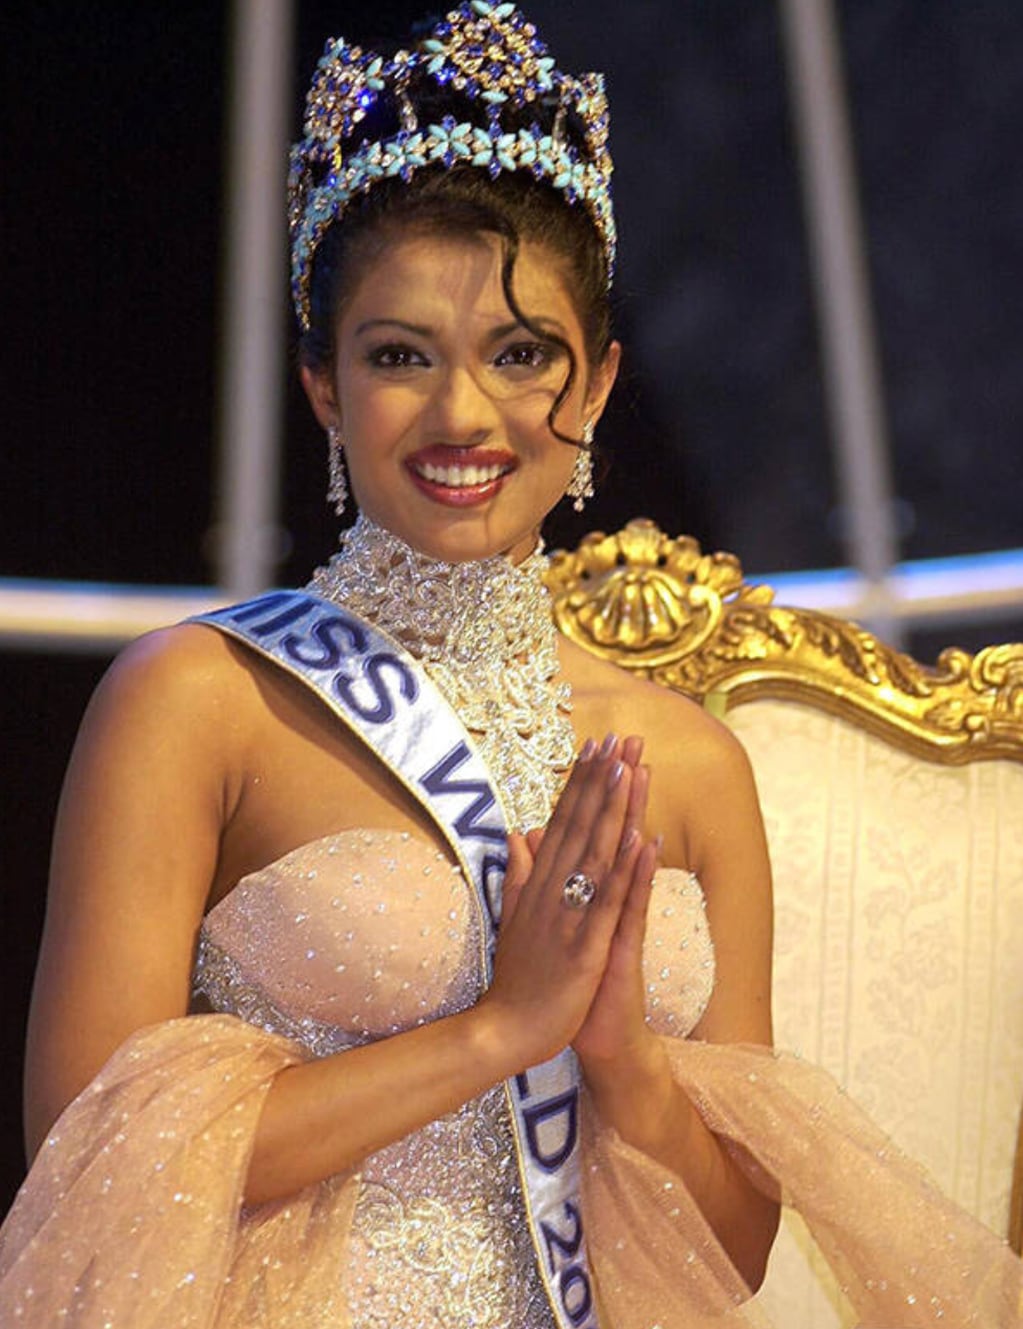 La joven Priyanka de 18 años, se mantuvo en la misma pose casi toda la premiación.